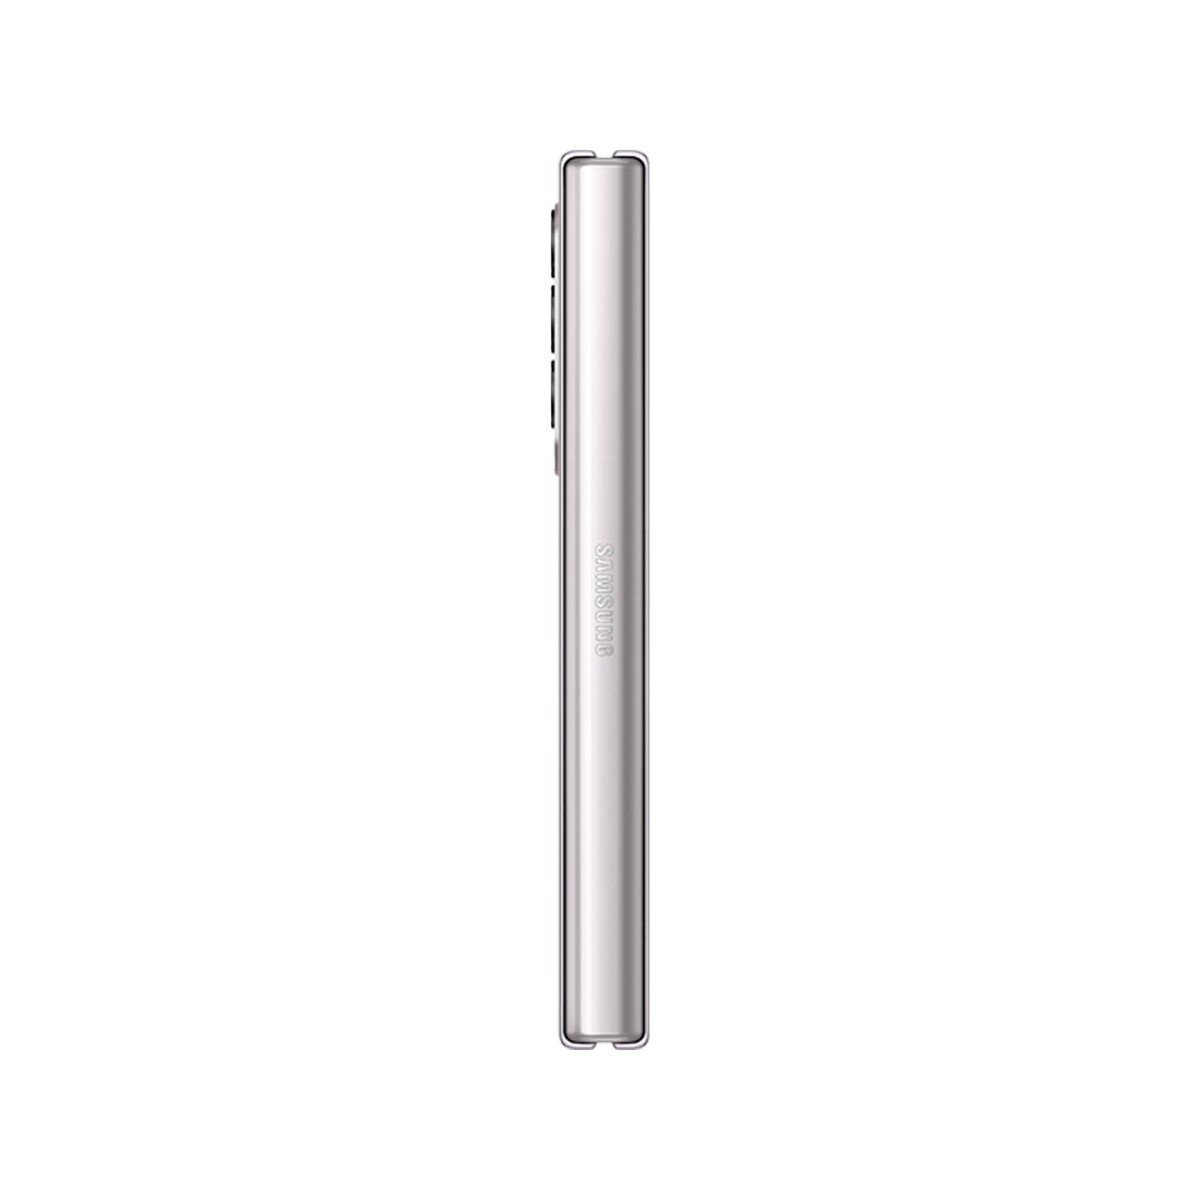 Samsung Galaxy Z Fold 3 F926 256GB 5G Phantom Silver